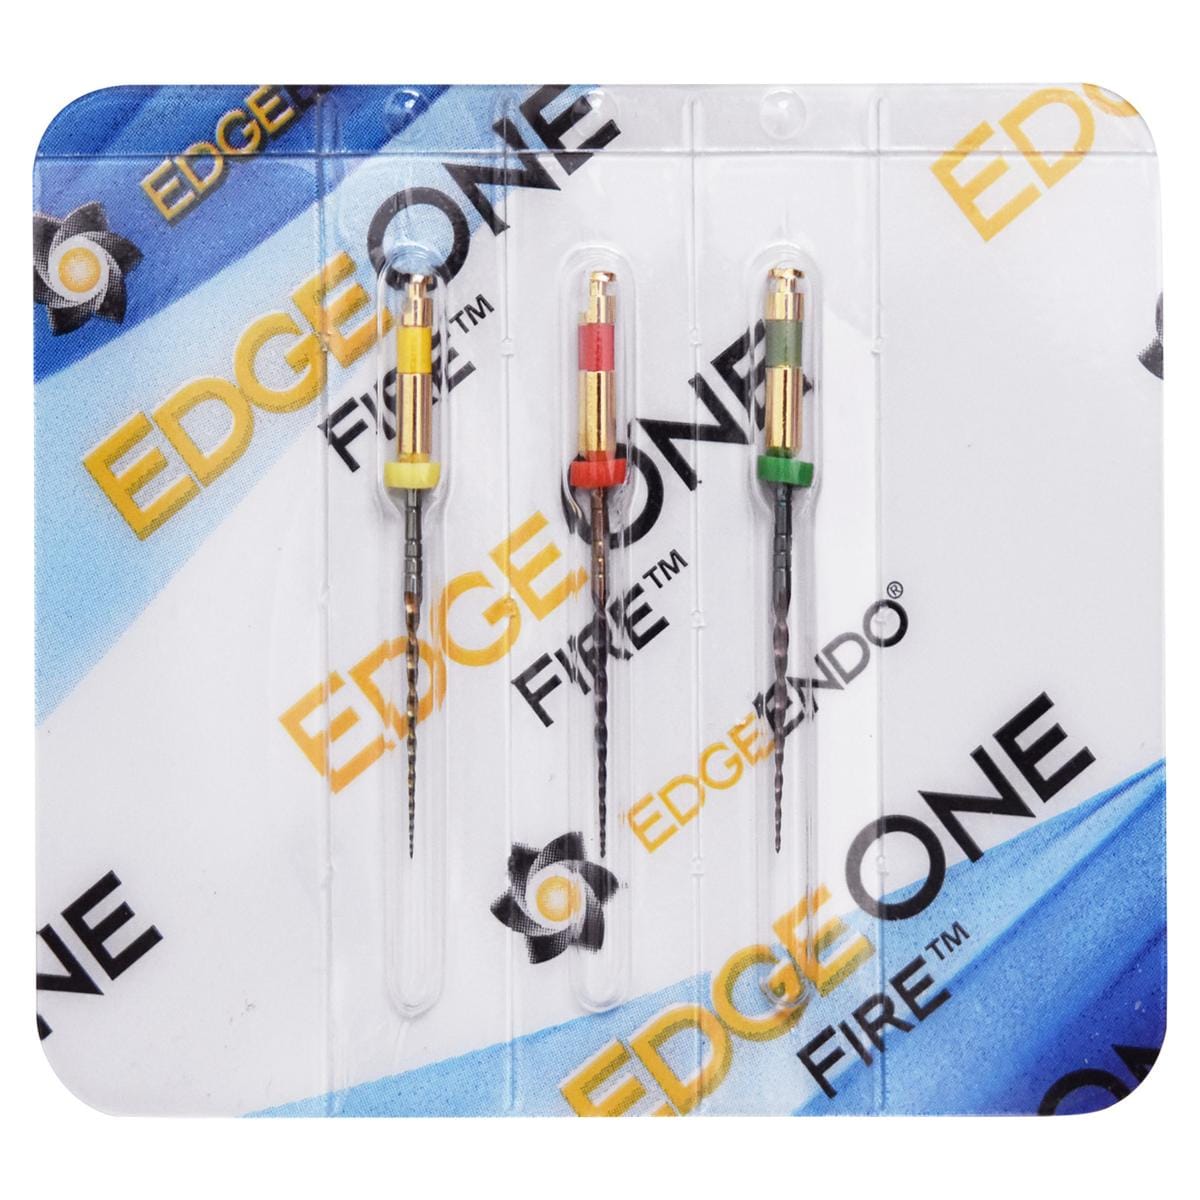 EdgeOne Fire Endofeilen - Sortiment - Länge 25 mm, Packung 3 Stück